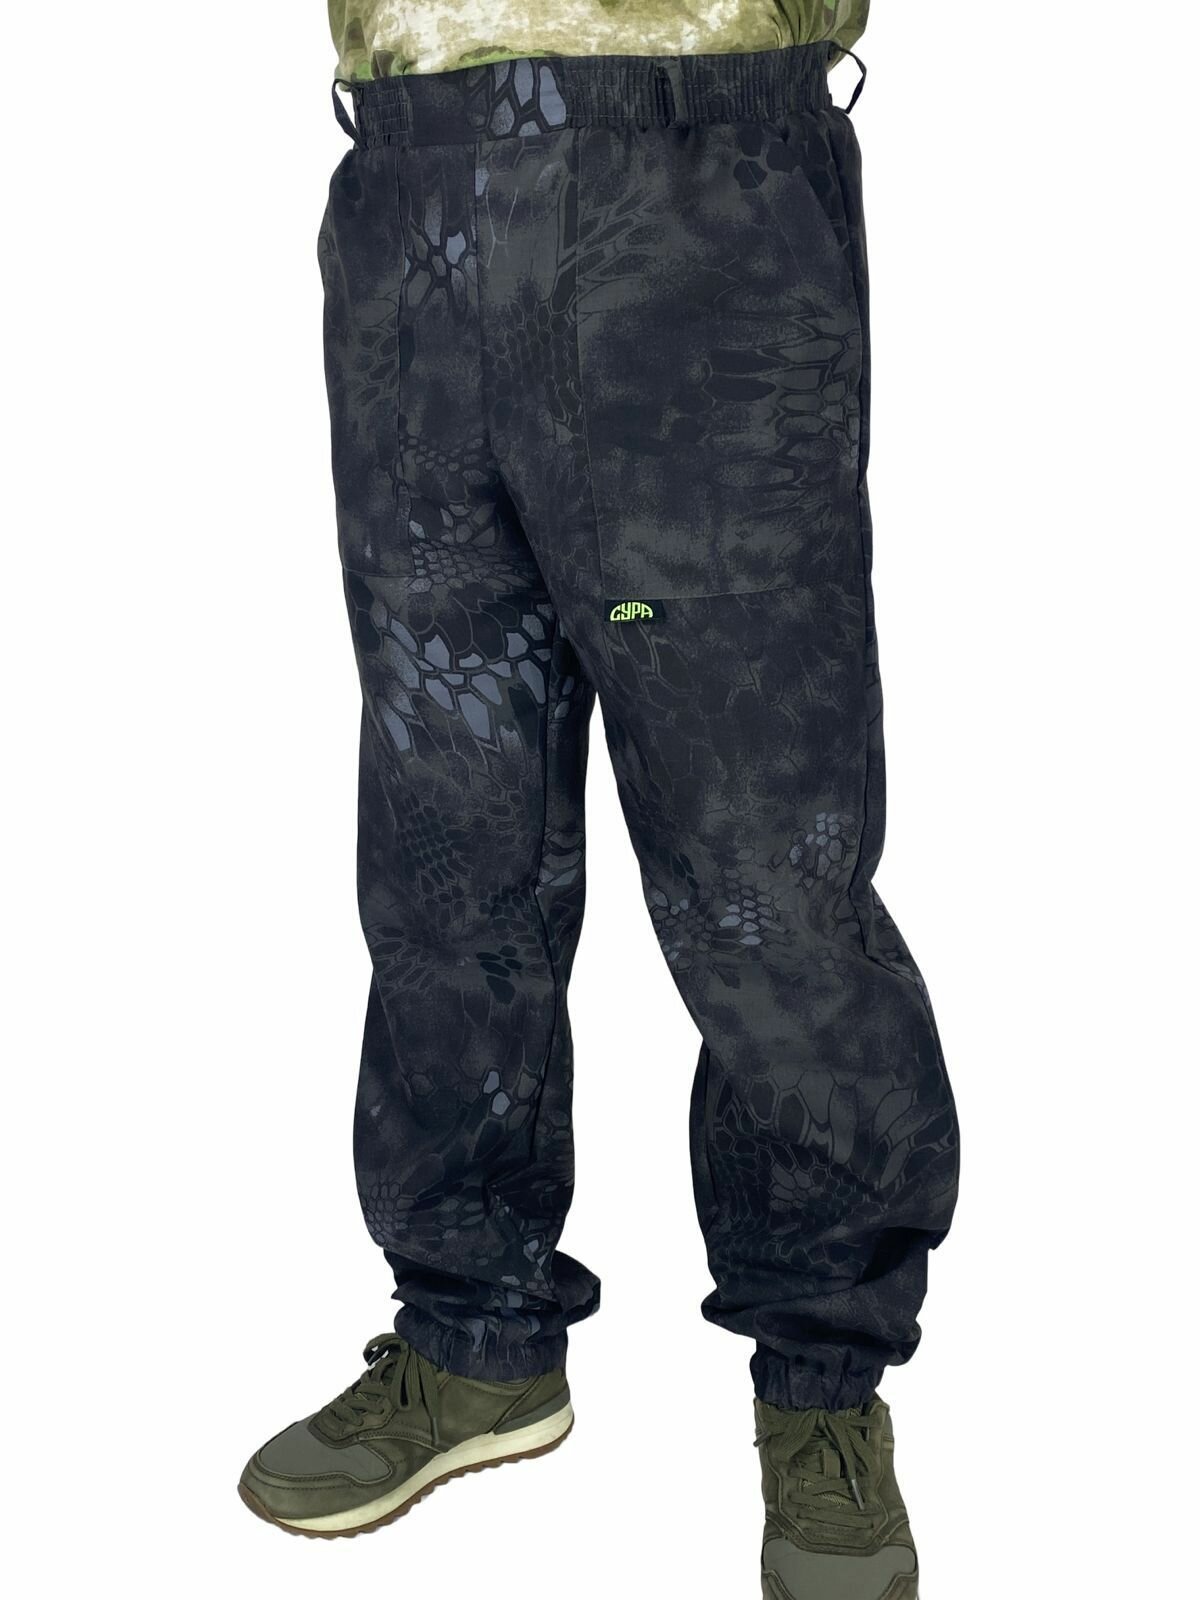 Камуфляжные брюки V3, 24 расцветки, тонкий материал / камуфляжные брюки / рабочие брюки